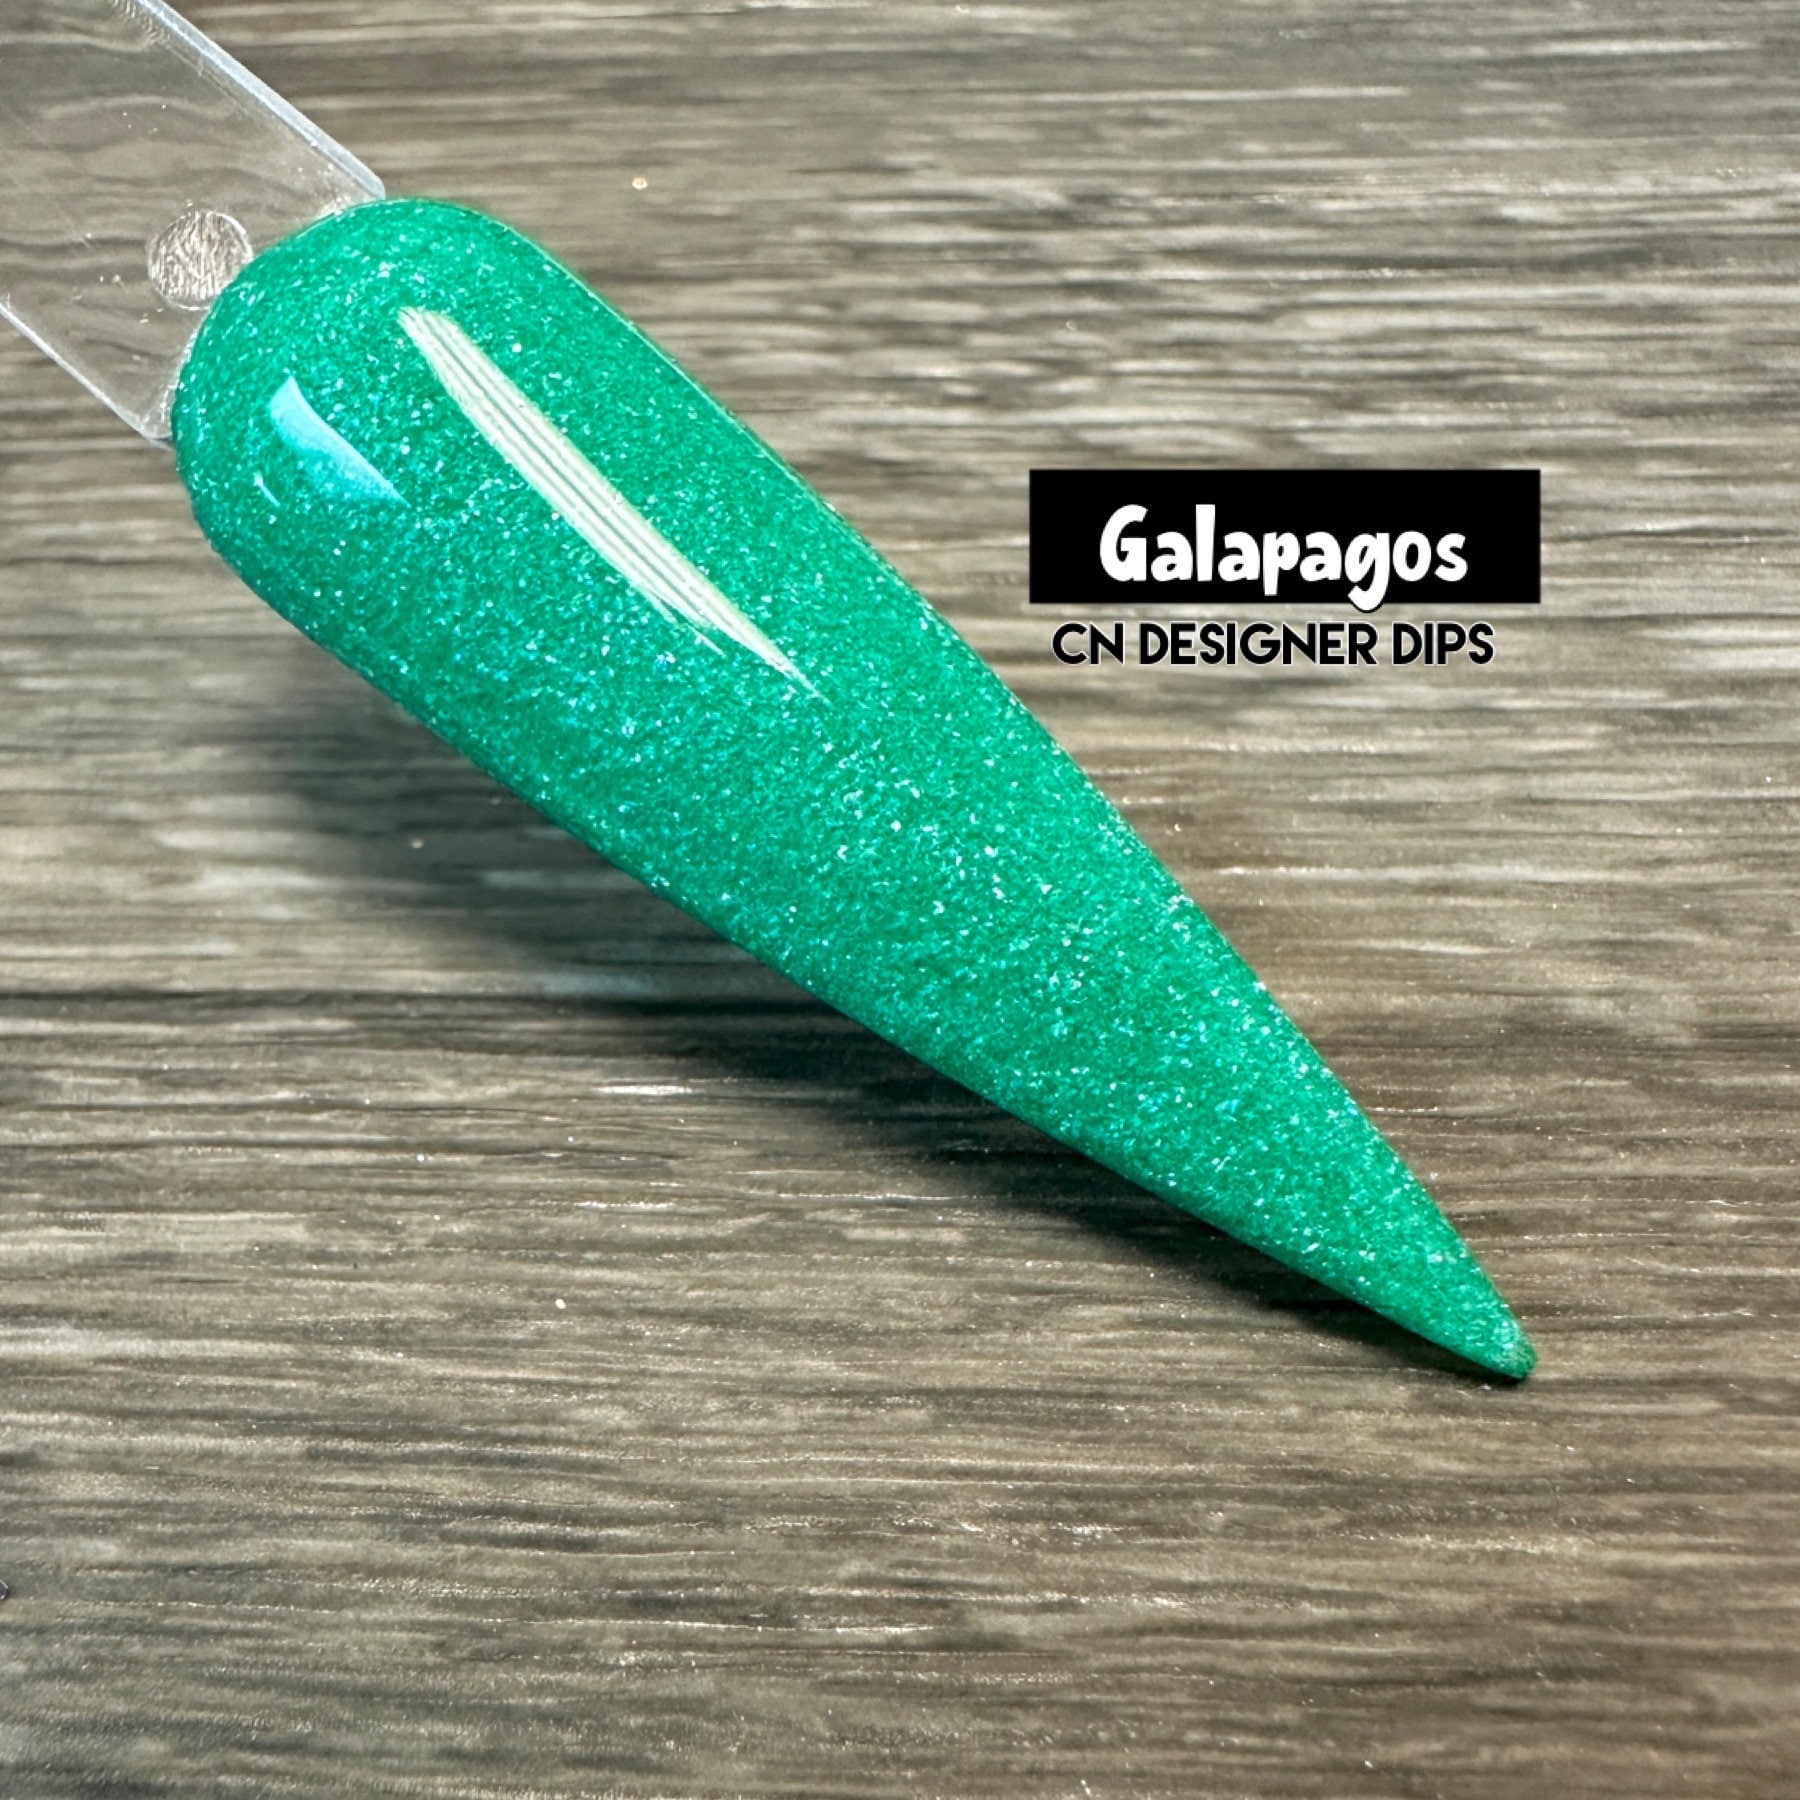 Galapagos Oa5 - Dip Puder, Puder Für Nägel, Nagel Dip, Tauchen, Nagelpulver, Acryl, Nägel von Etsy - CNDesignerDips